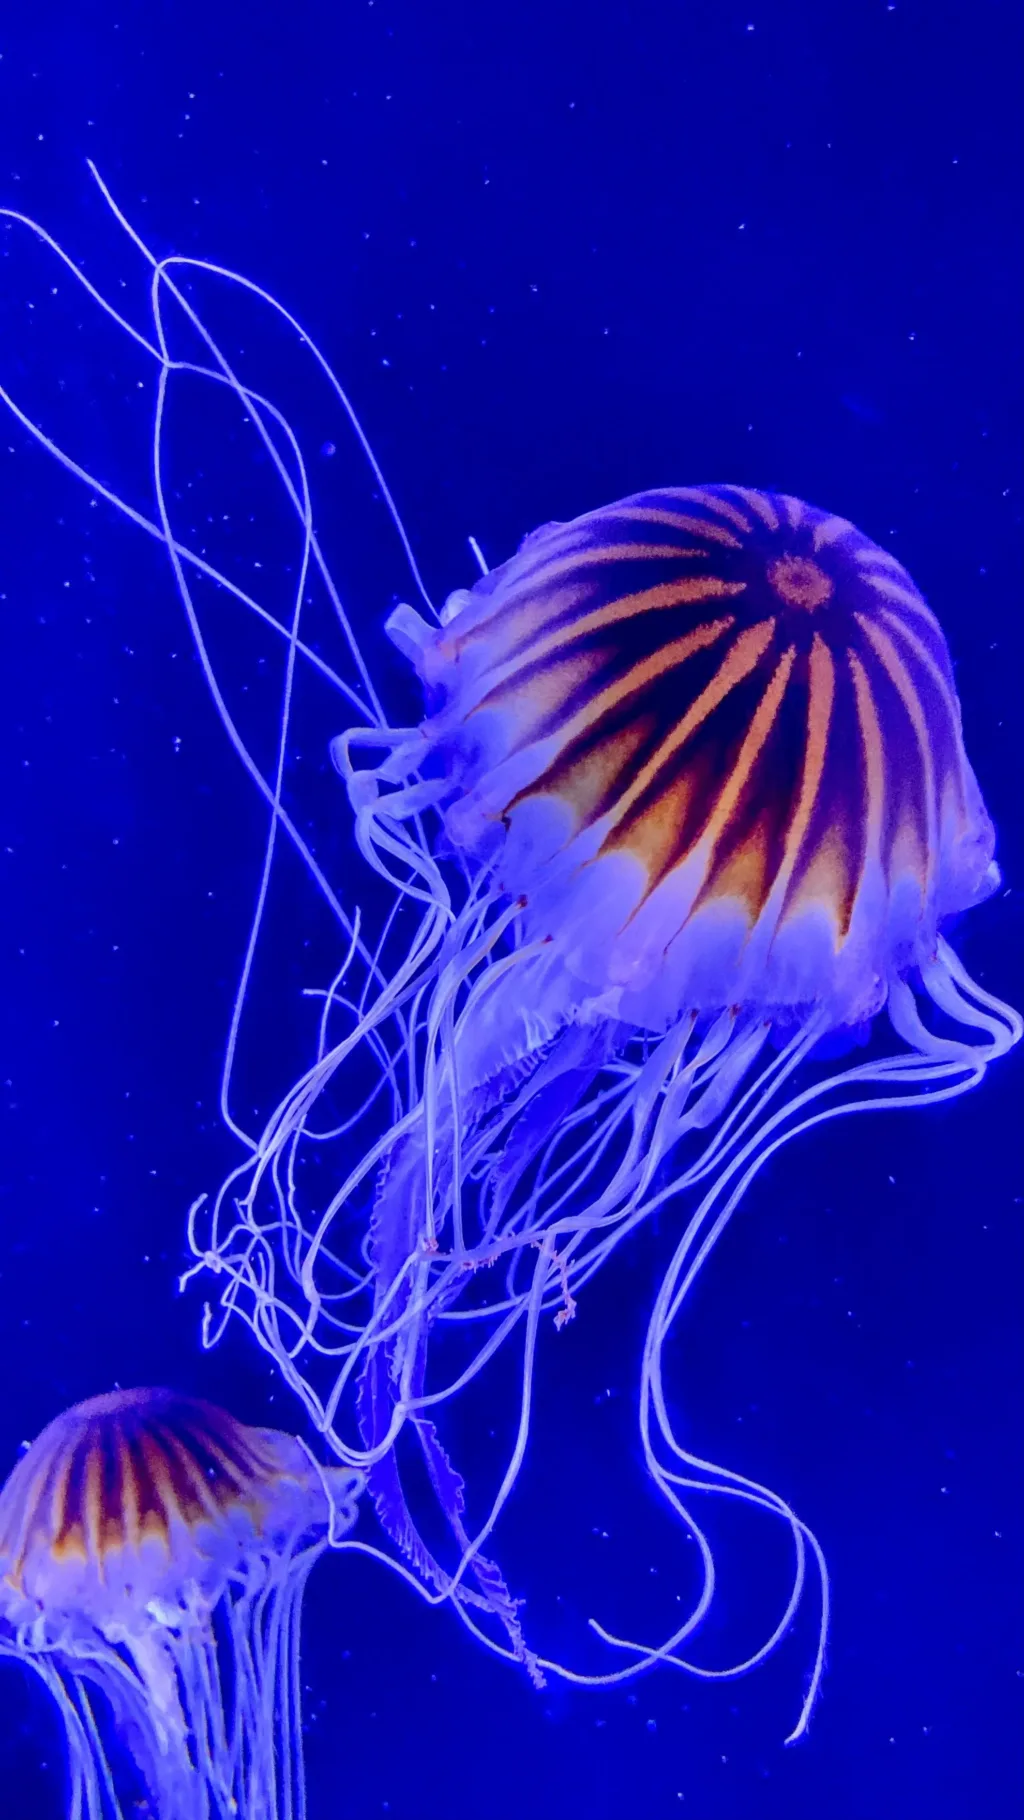 Ripley's aquarium smokies japanese jellyfish